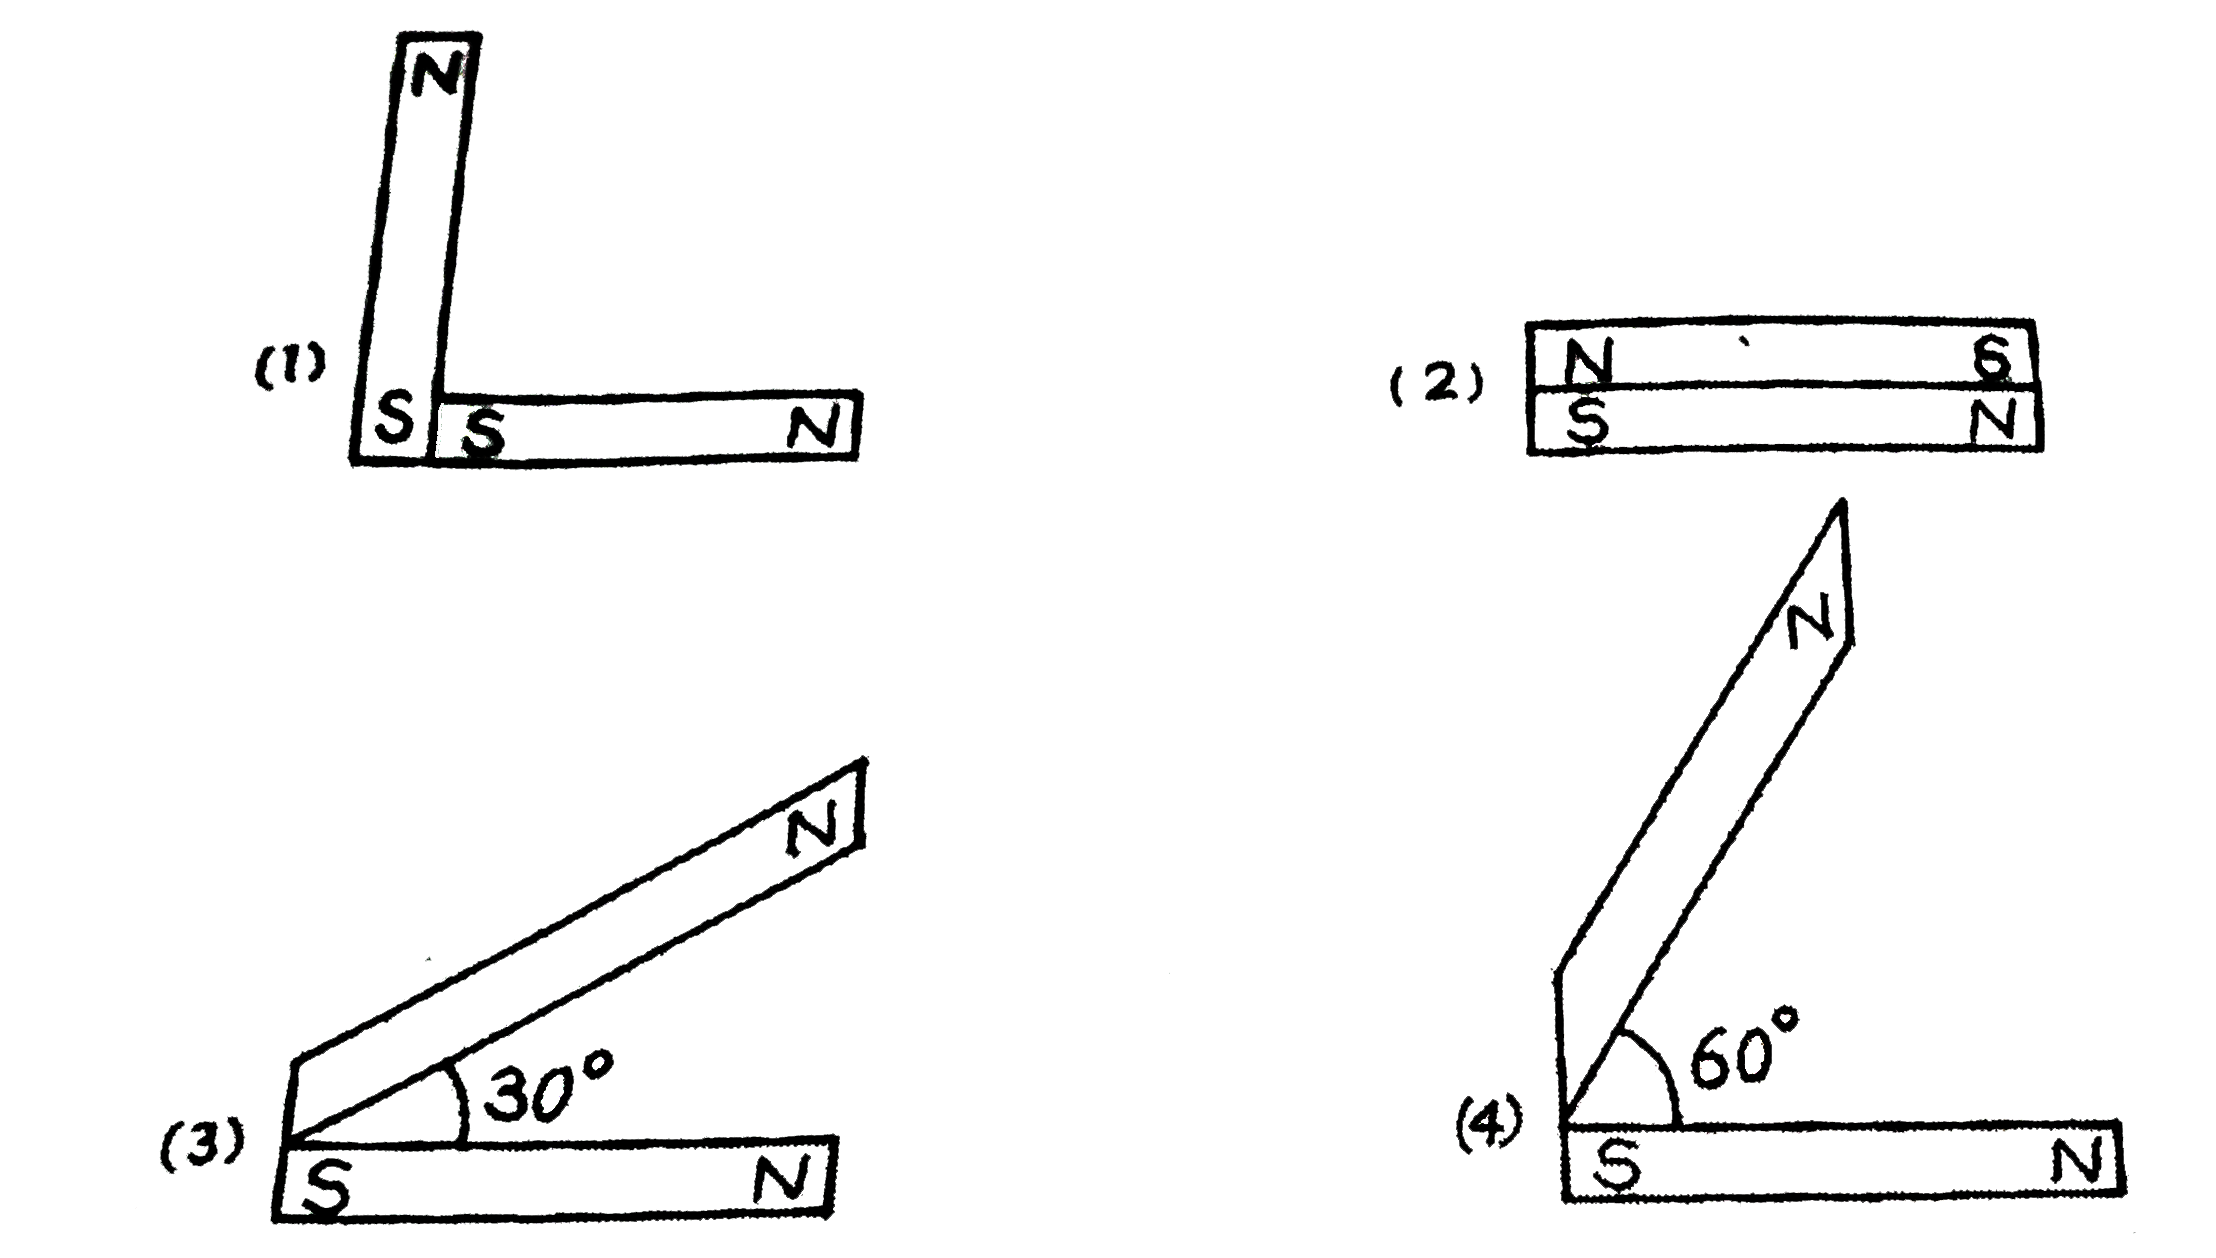 आरेख में दण्ड (छड़) चुम्बको की व्यवस्थाओं के विन्यास दर्शाये गये है। प्रत्येक चुम्बक की द्विध्रुव आघूर्ण vec(M) है। किस विन्यास में नेट चुम्बकीय द्विध्रुव आघूर्ण का मान अधिकतम होगा?